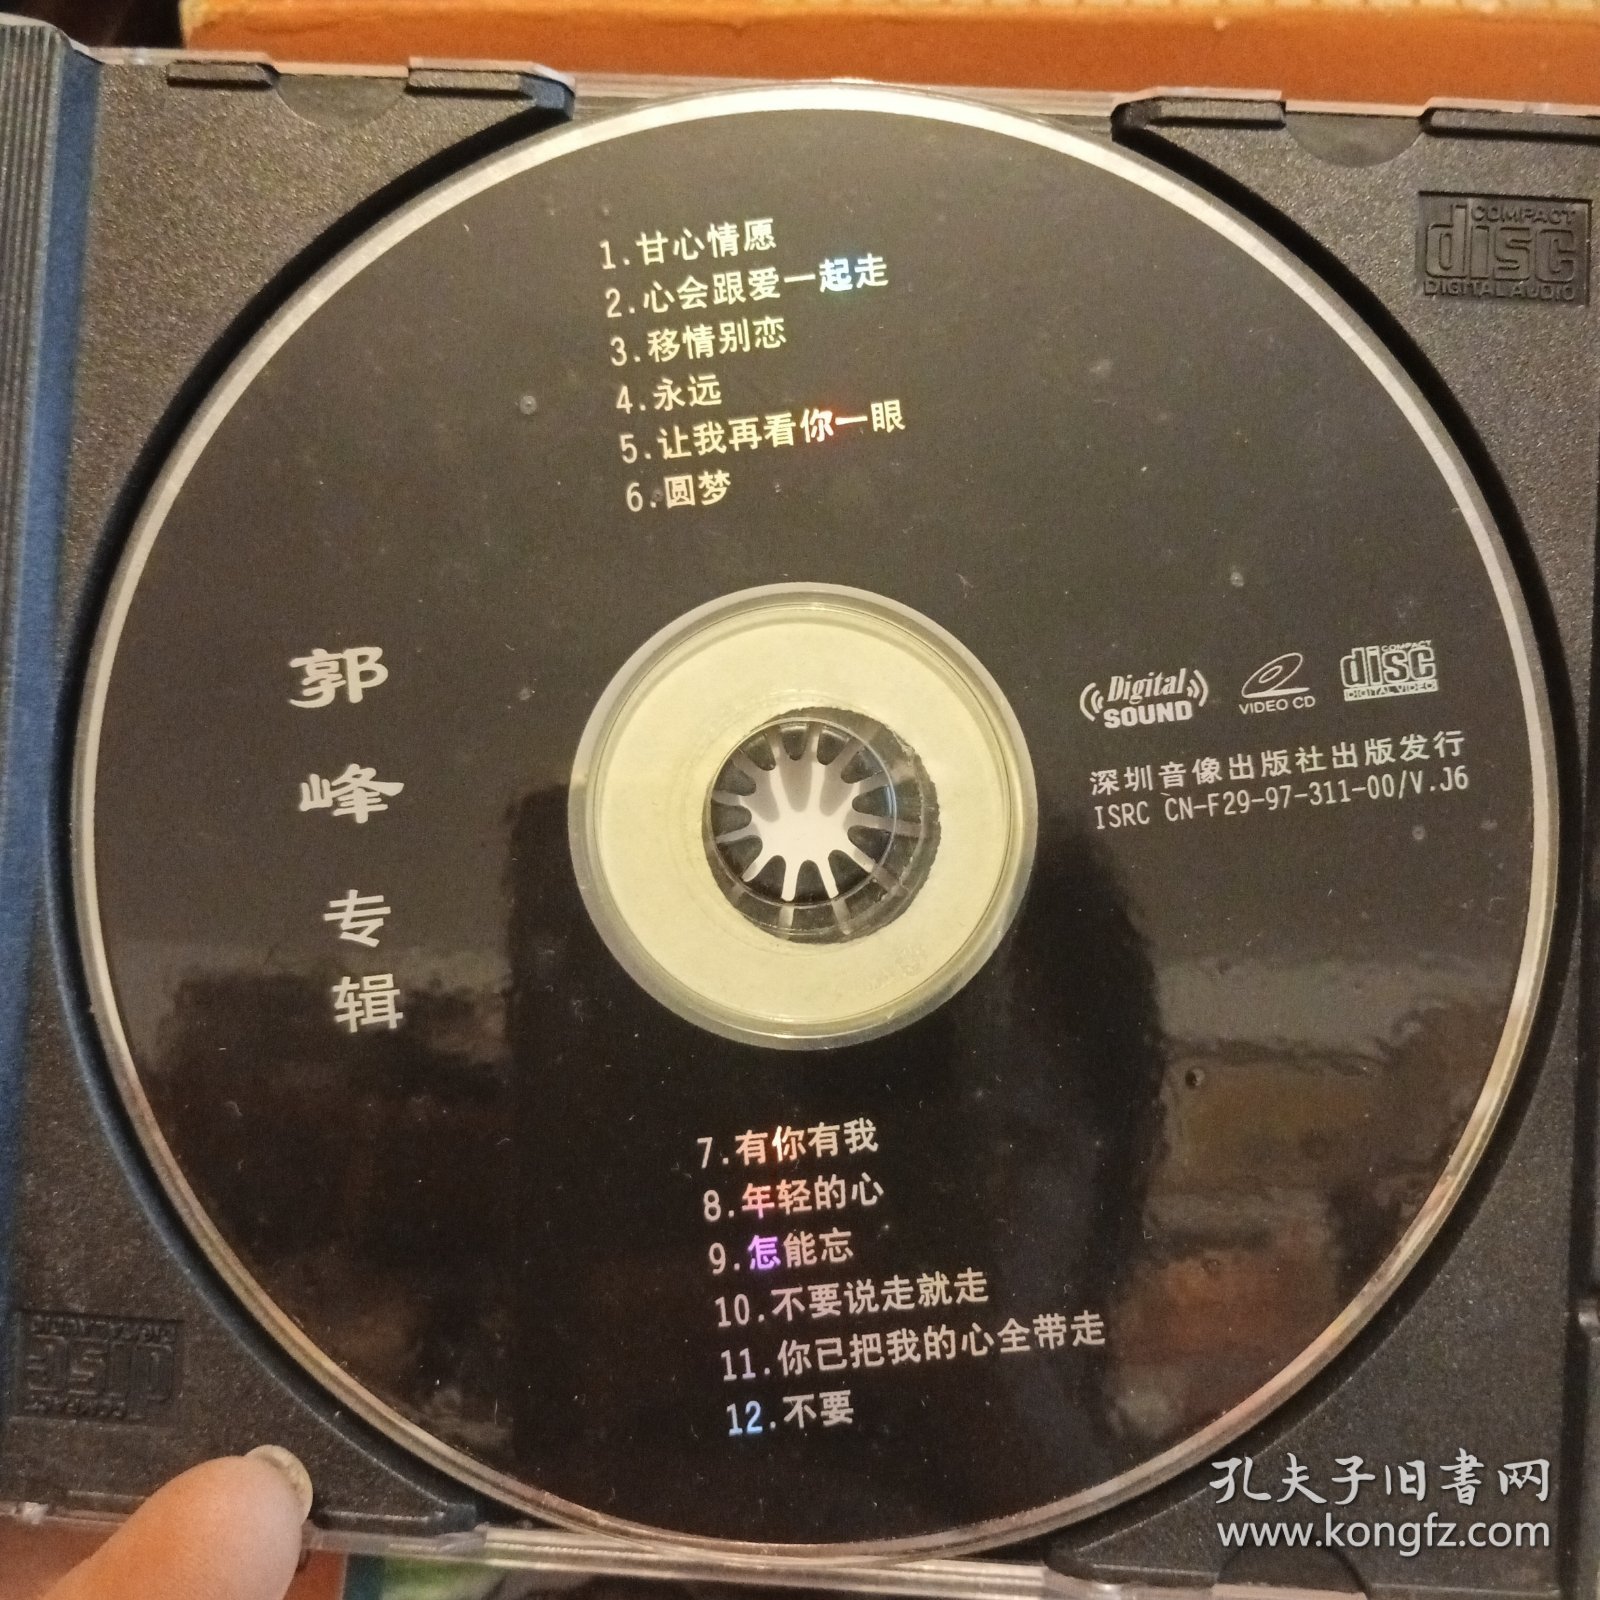 郭峰专辑CD